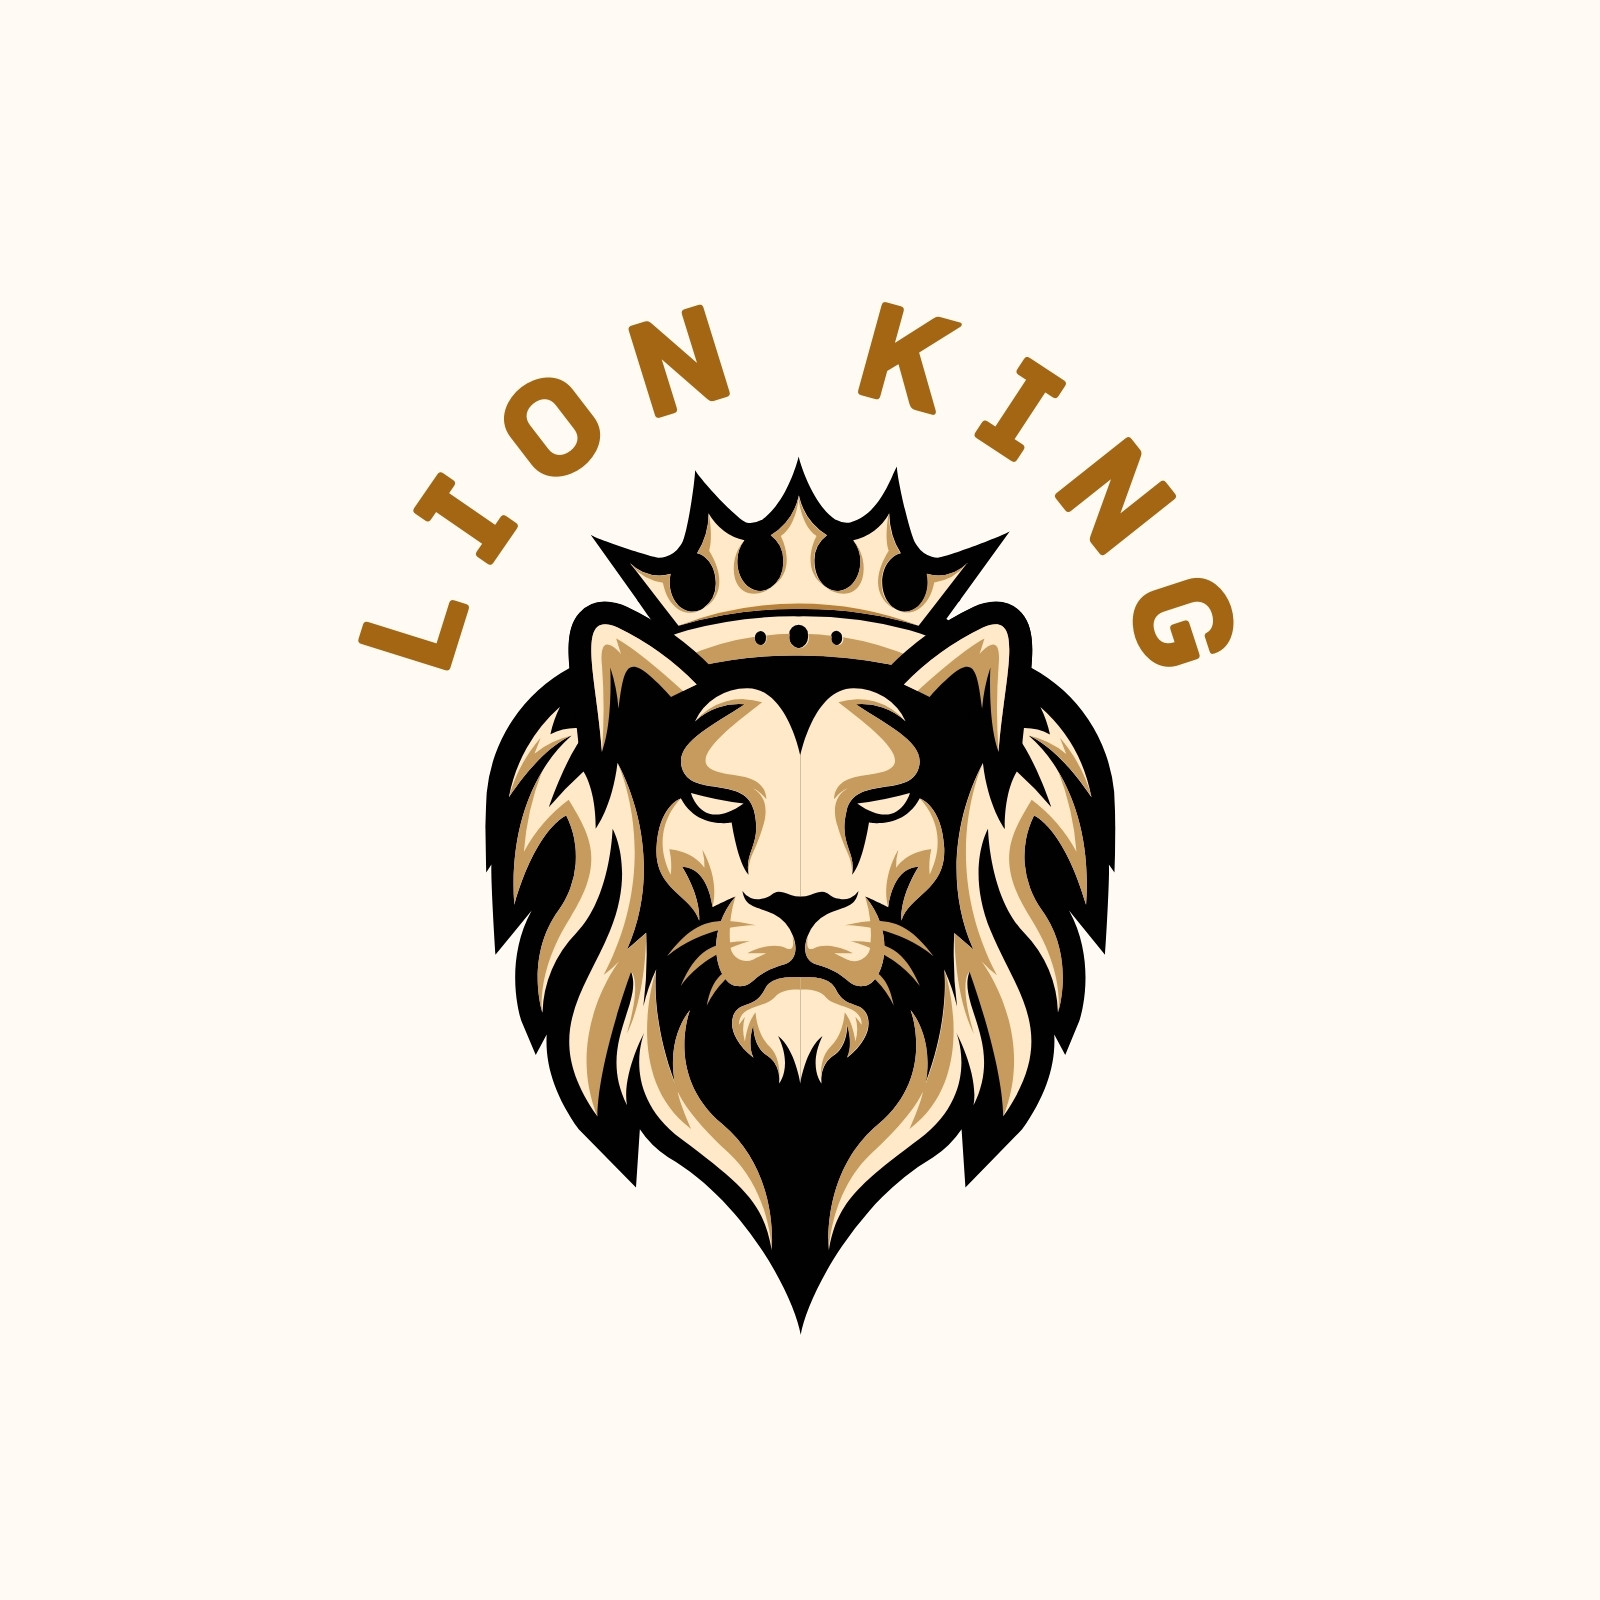 Premium Vector | King lion logo crown logo